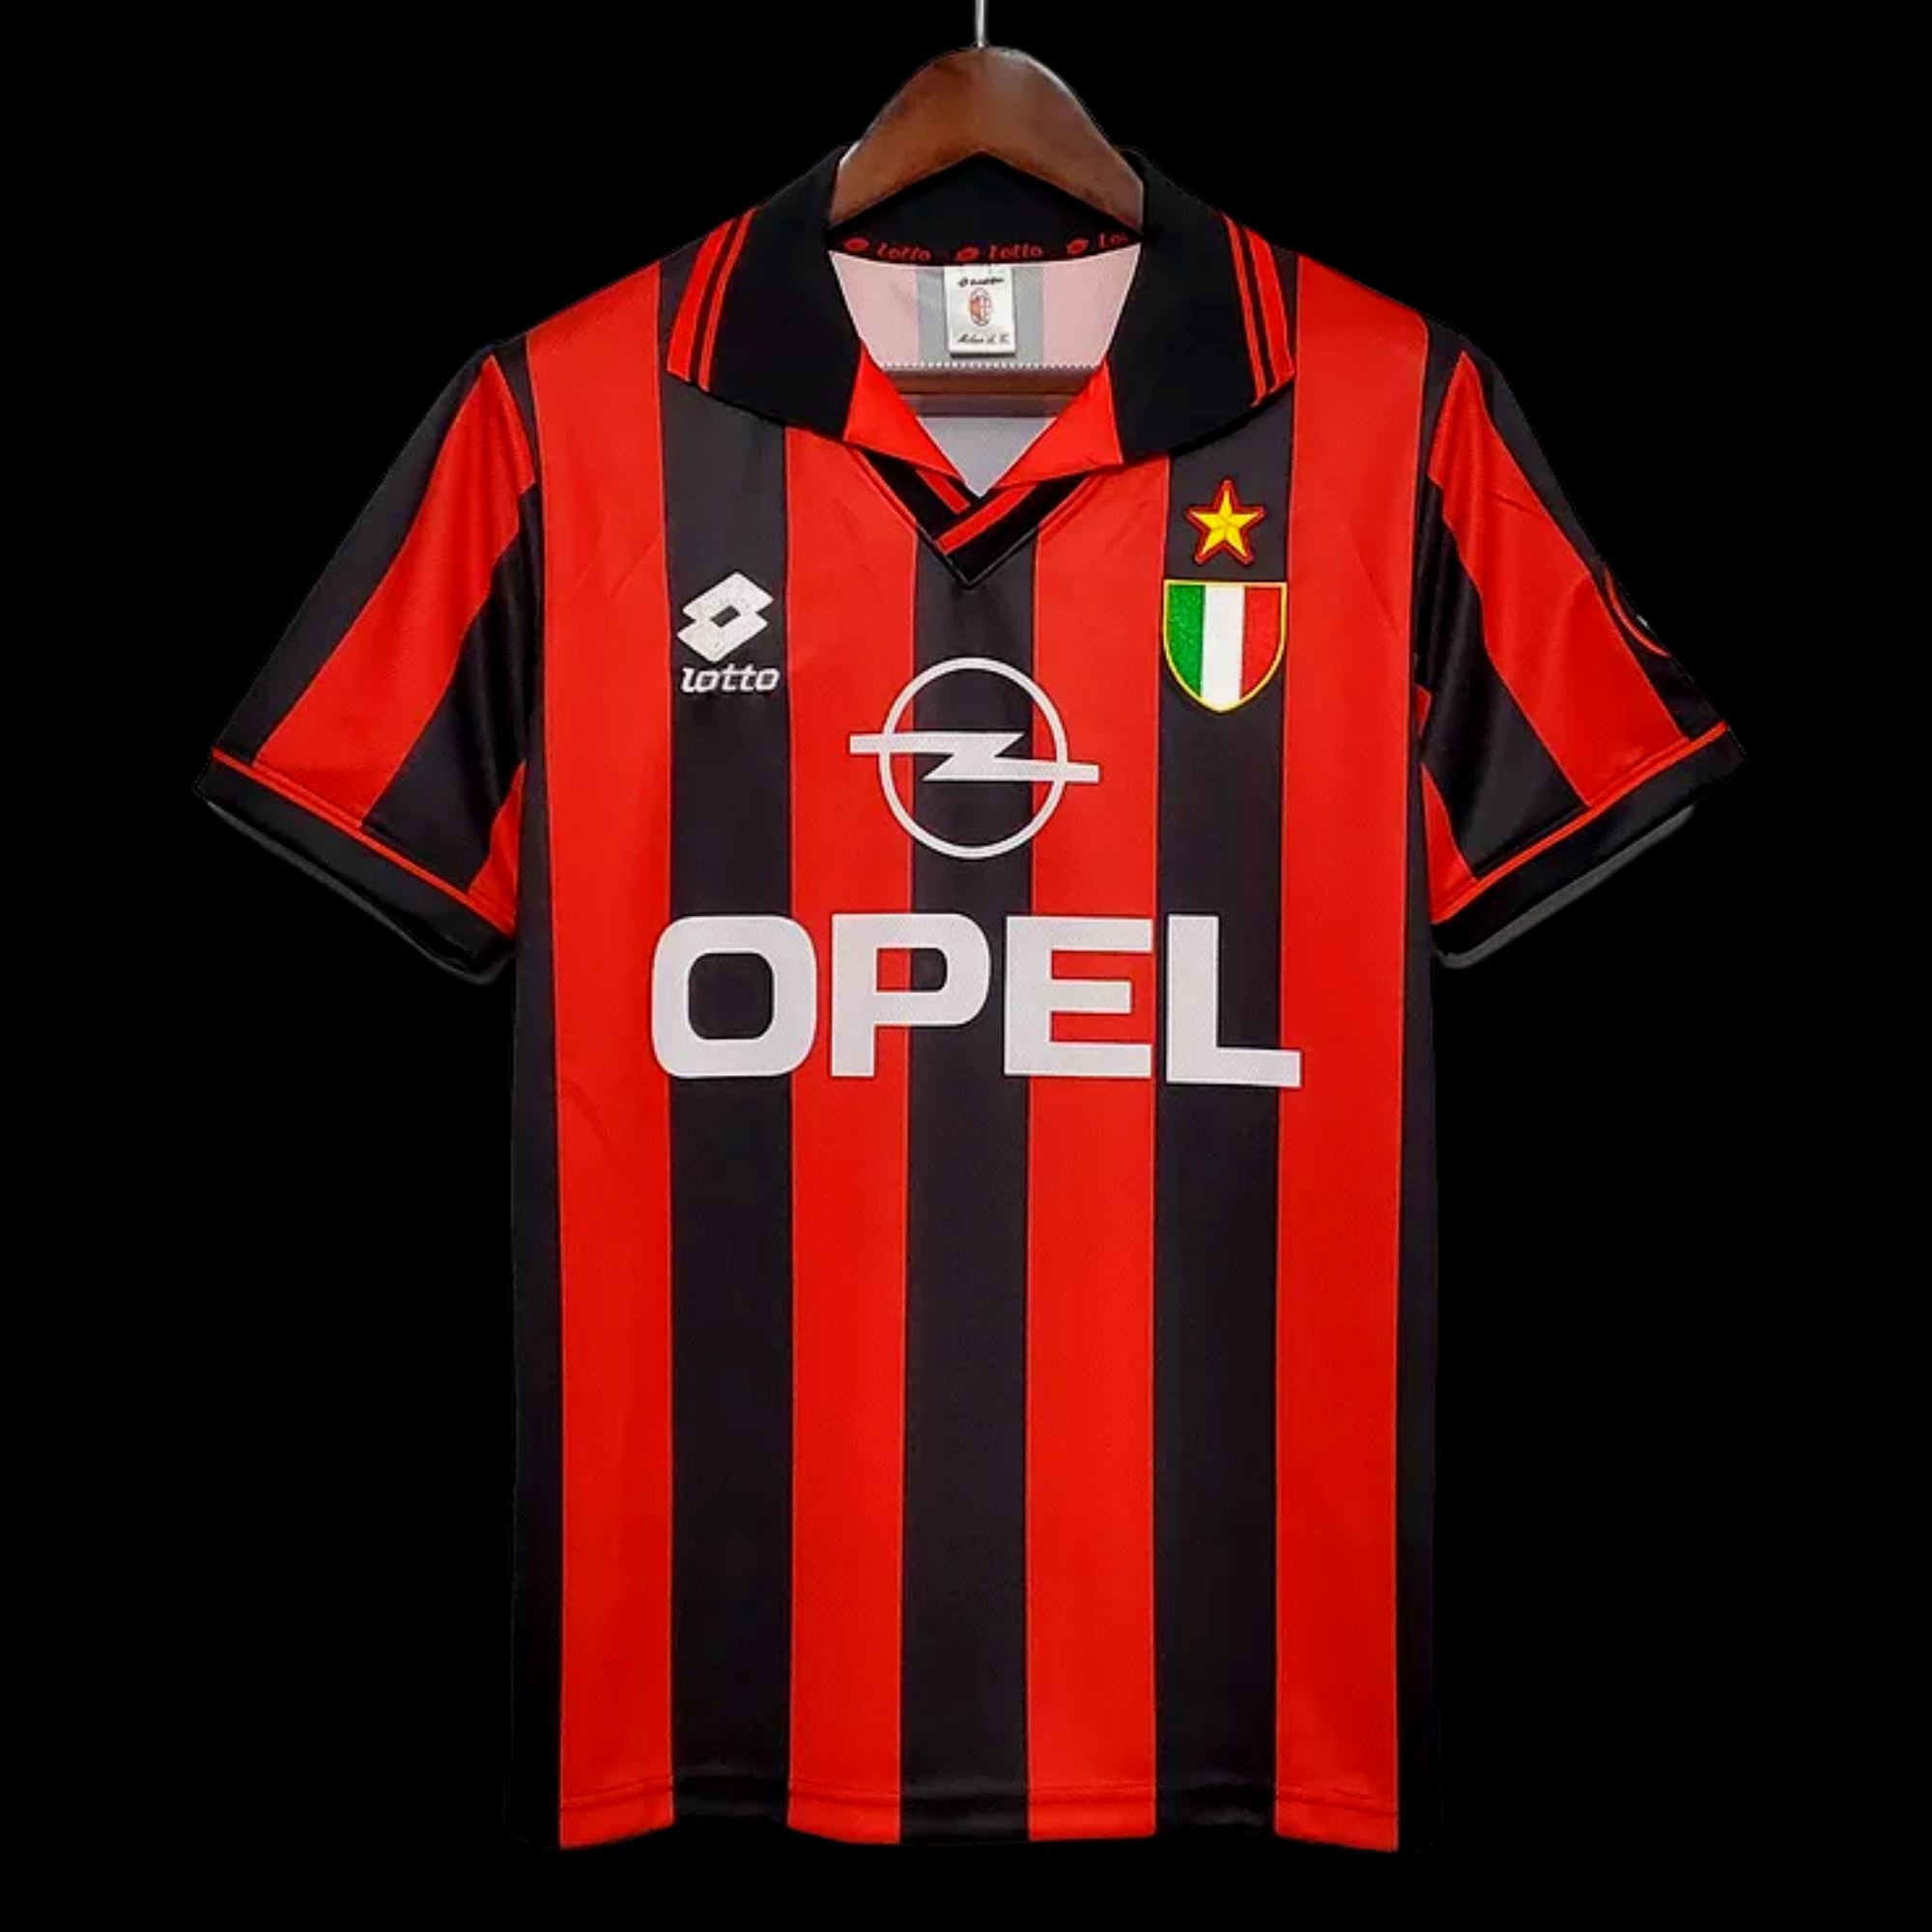 1996/97 AC Milan Baggio Jersey - ITASPORT